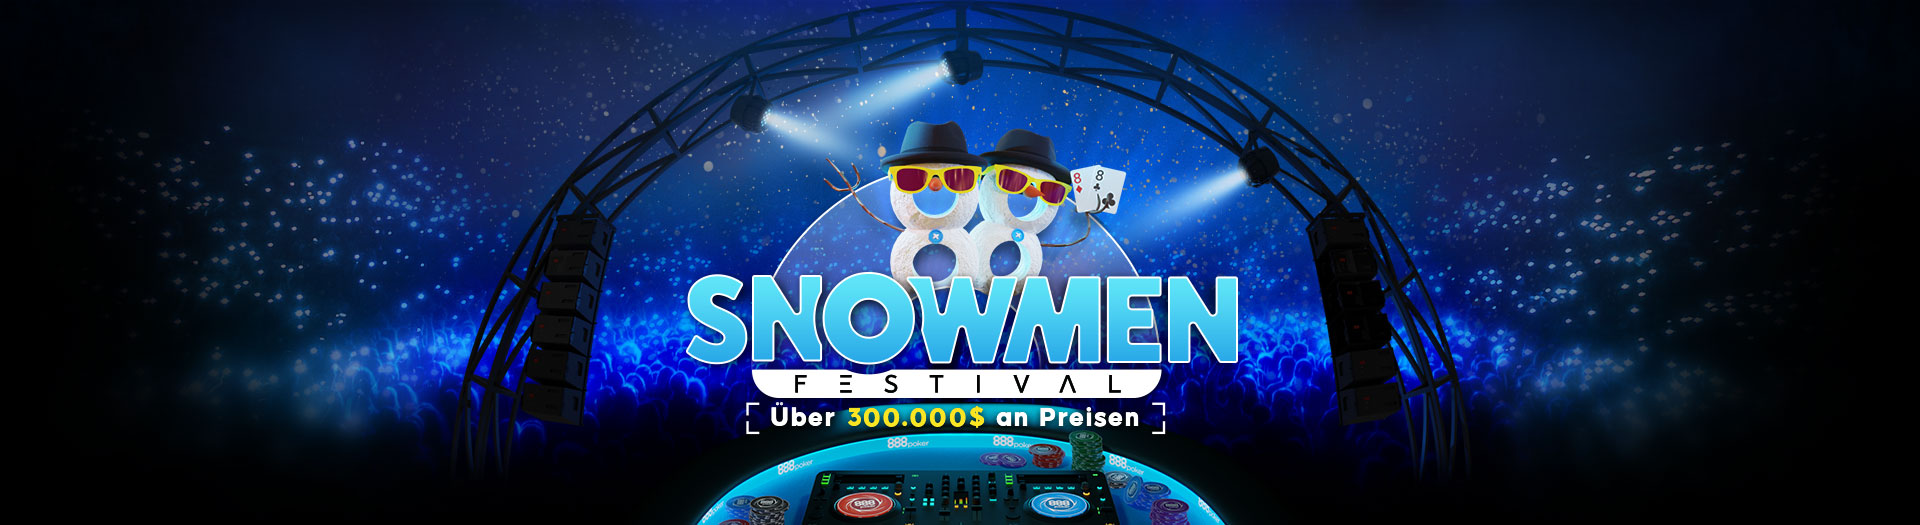 Snowmen-Festival-LP-DE-Header-PC-TS-62635-1693996645728_tcm1993-595827